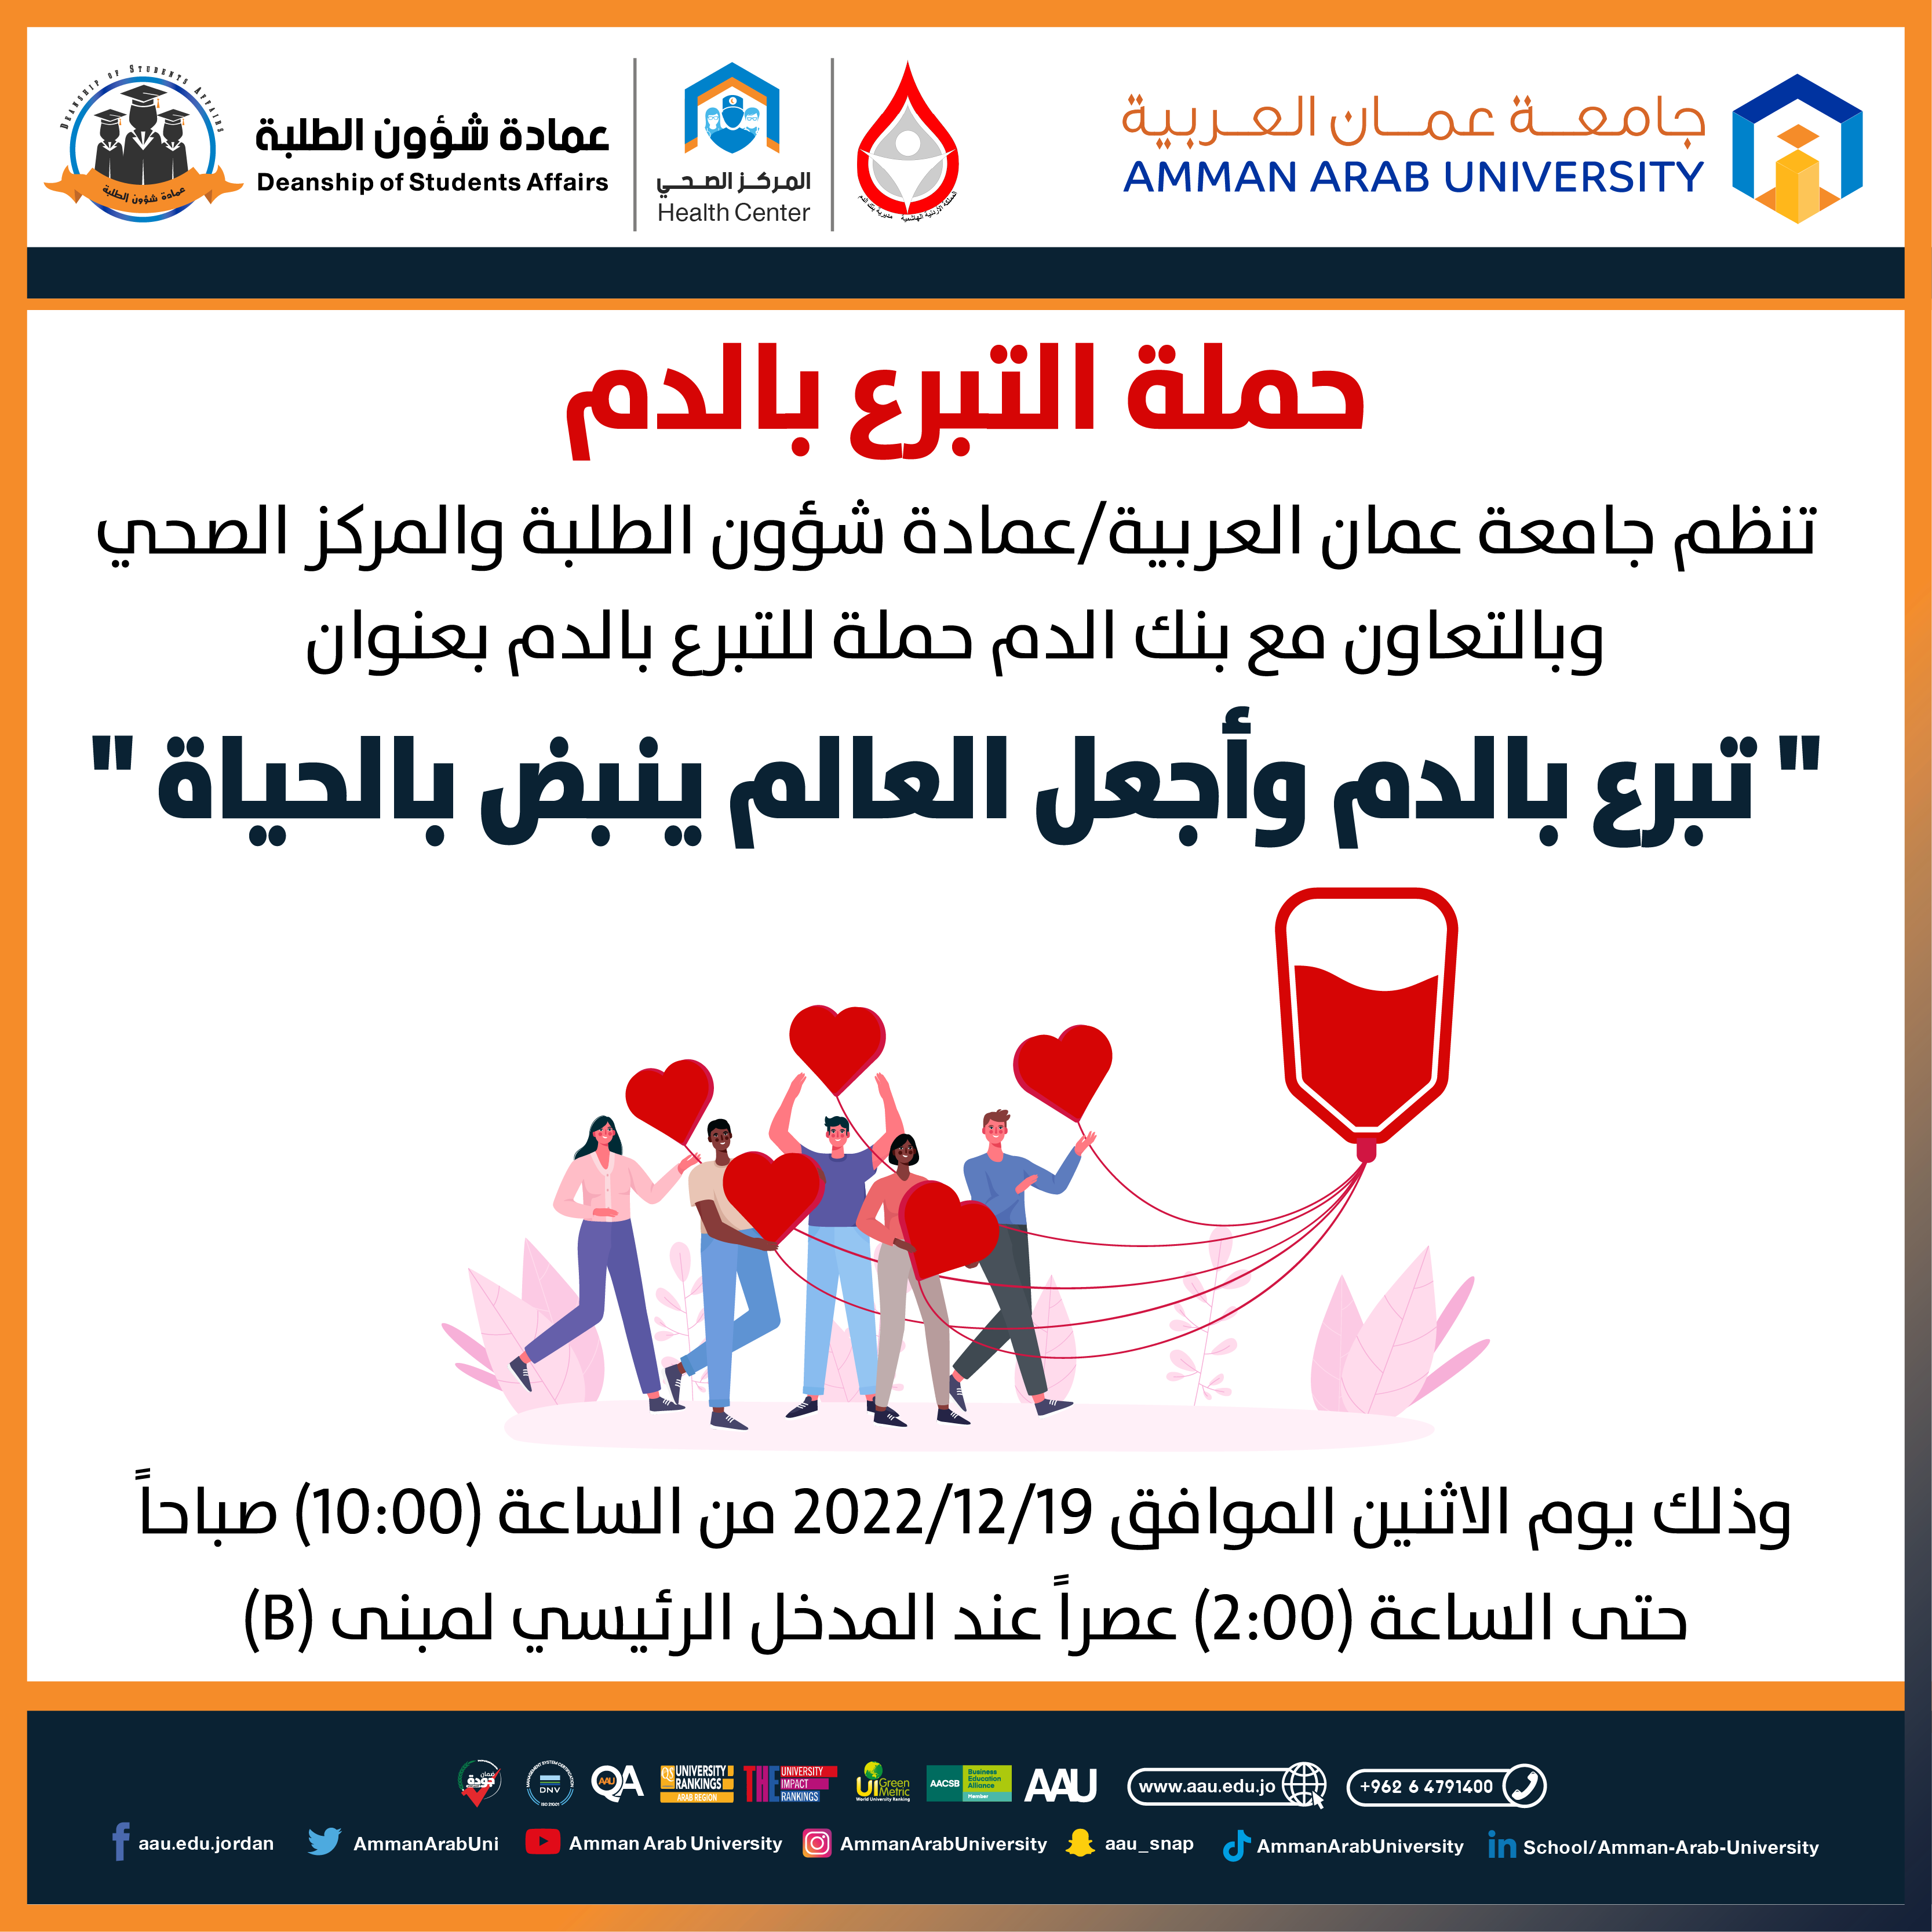 اعلان حملة التبرع بالدم